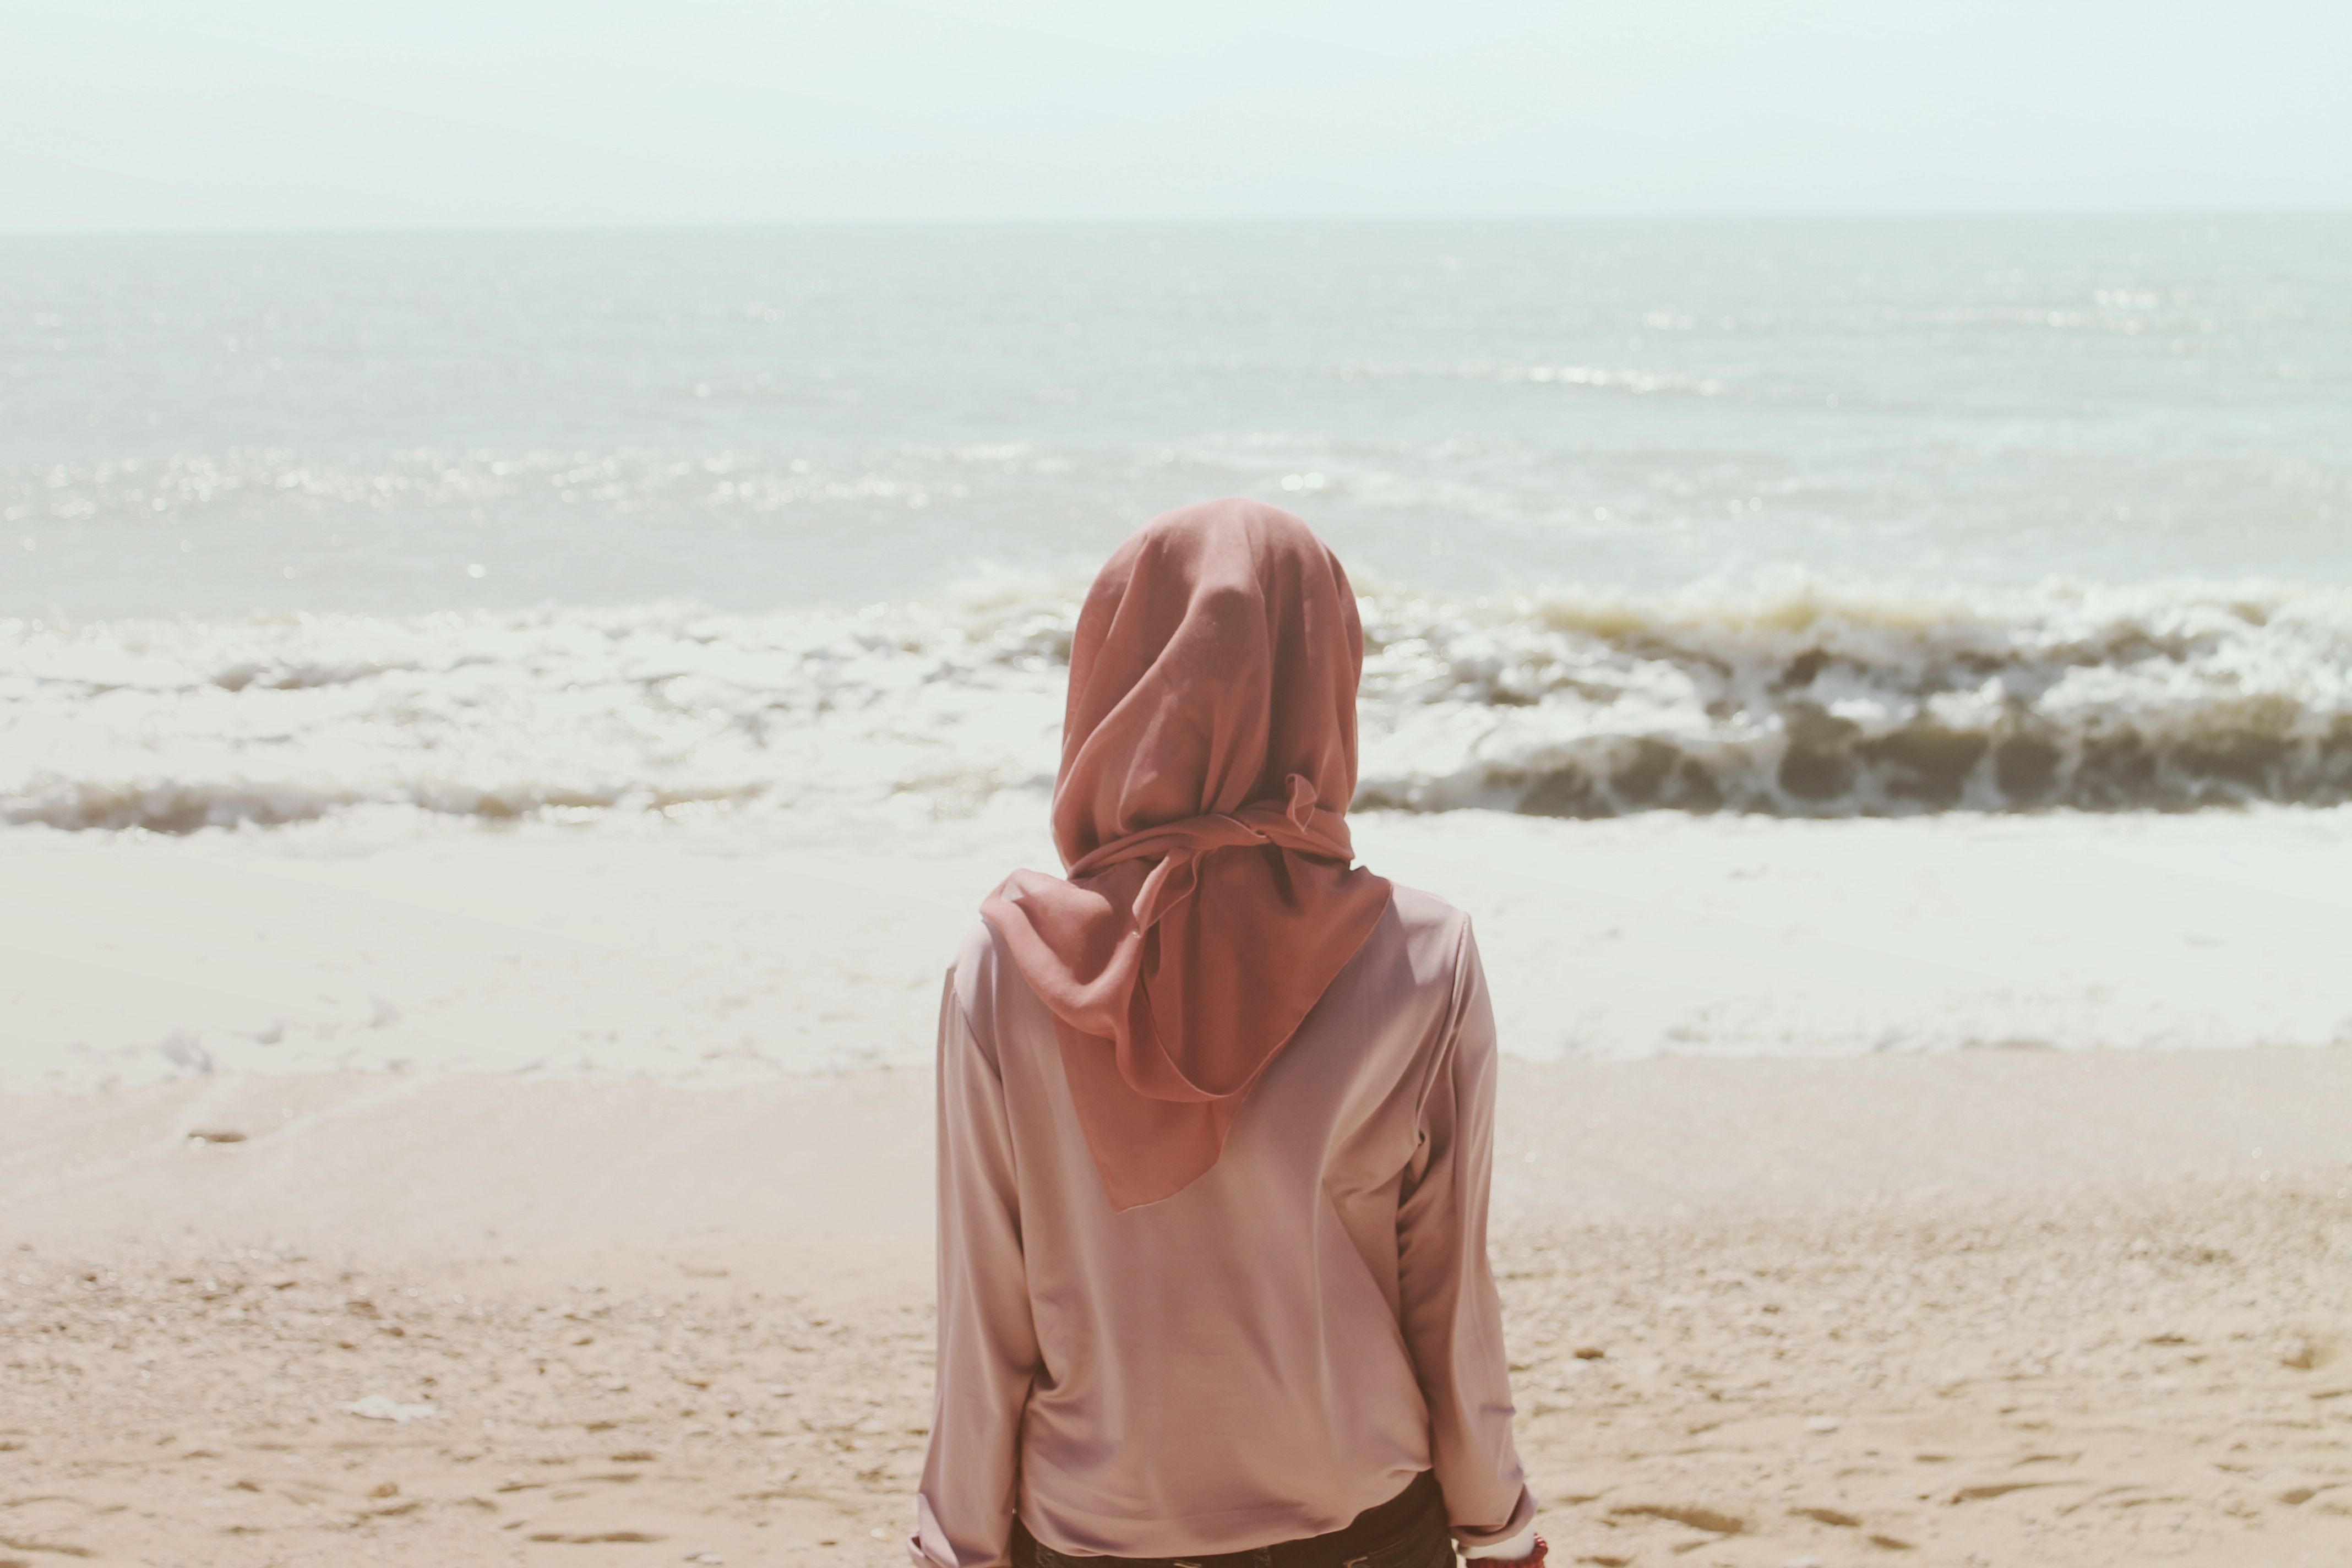 تصویر پروفایل دختر با حجاب از پشت نشسته روی ساحل رو به دریا